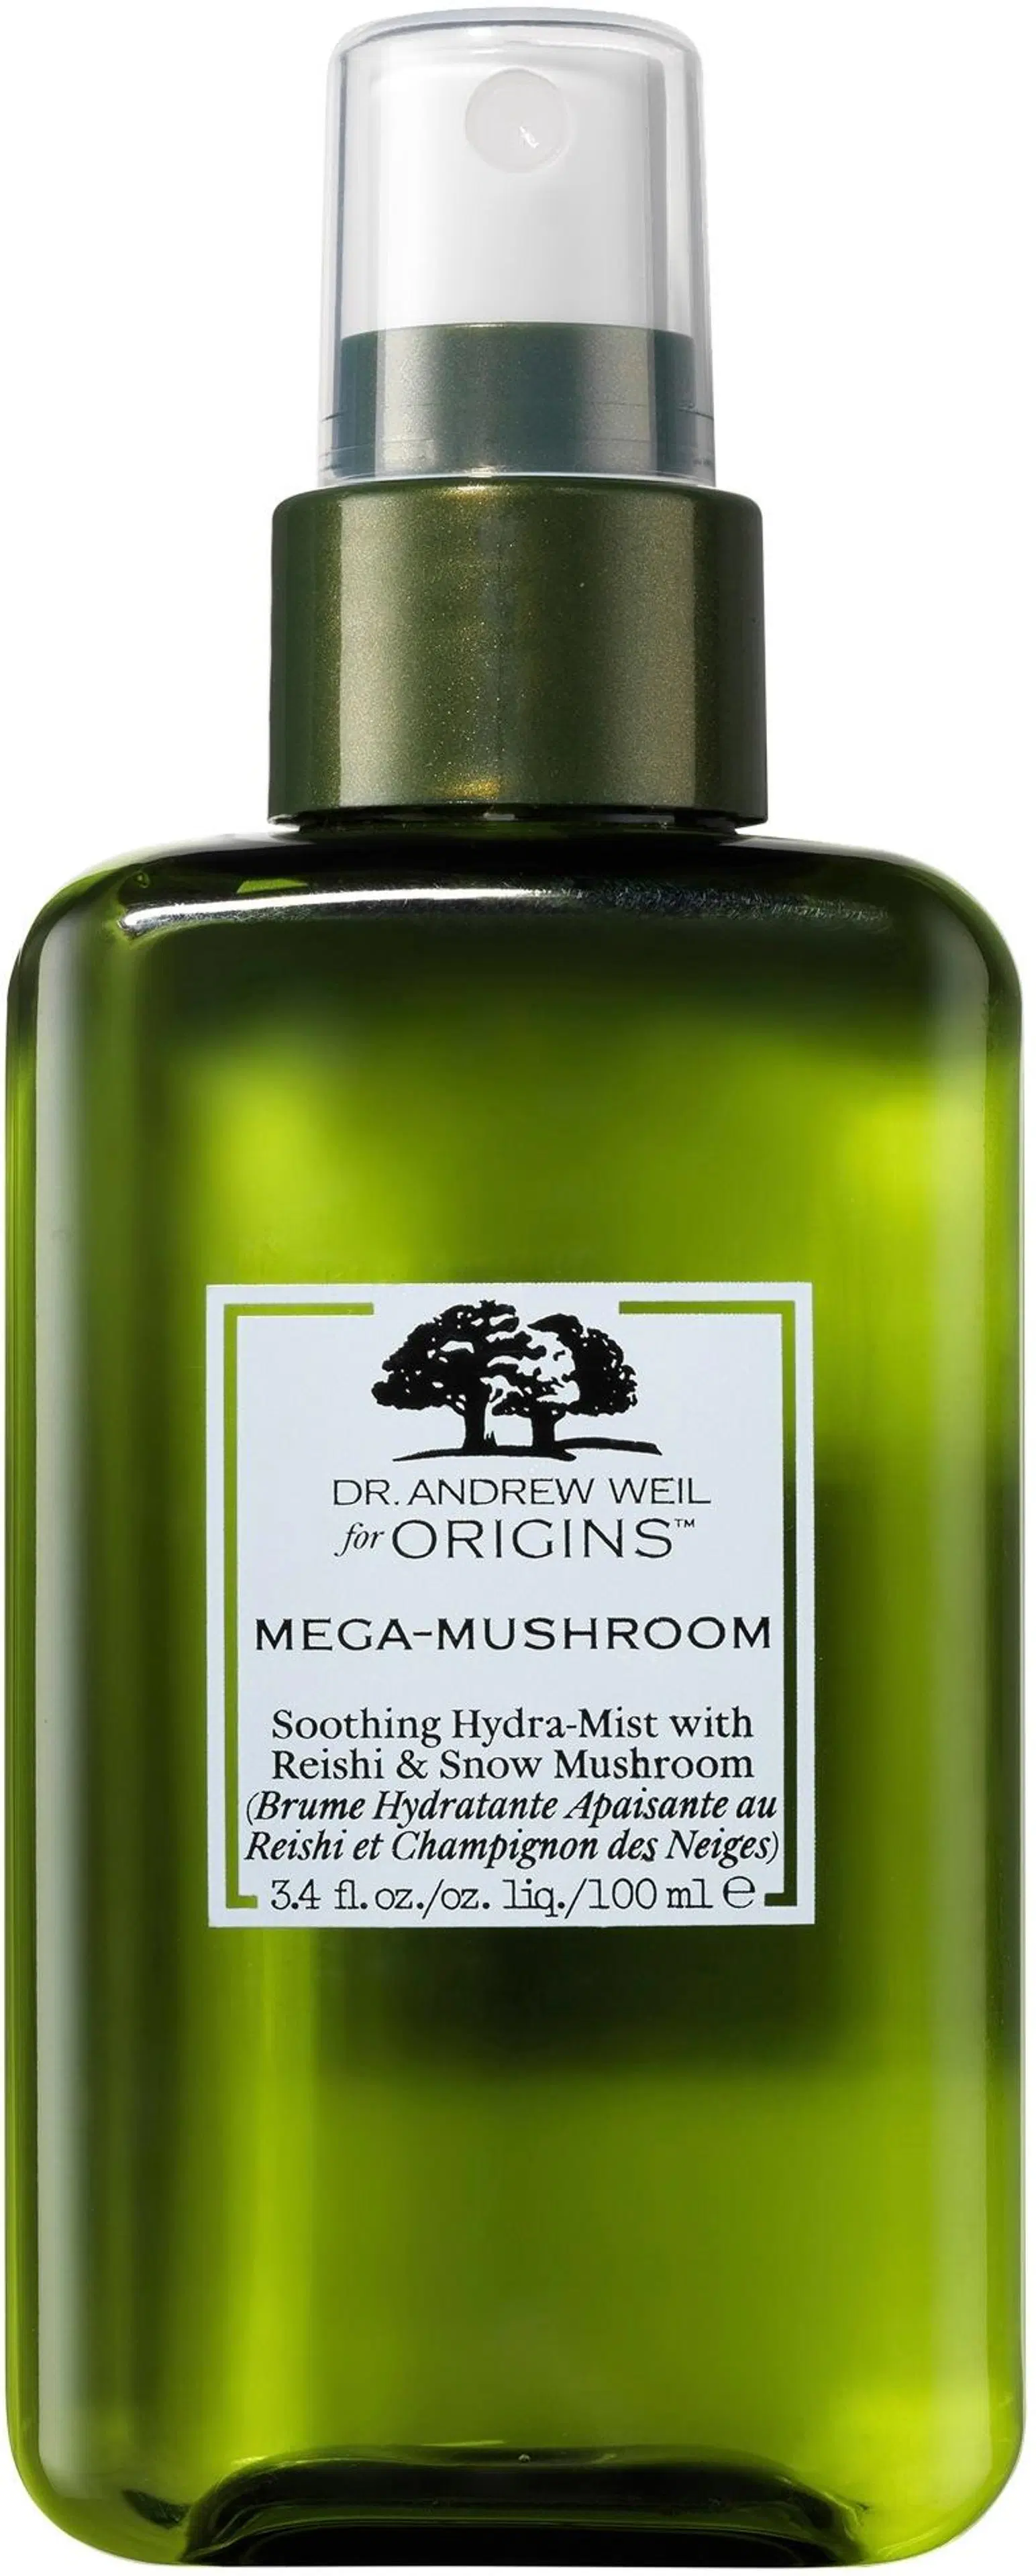 Origins Mega-Mushroom Soothing Hydra-Mist suihke 100 ml